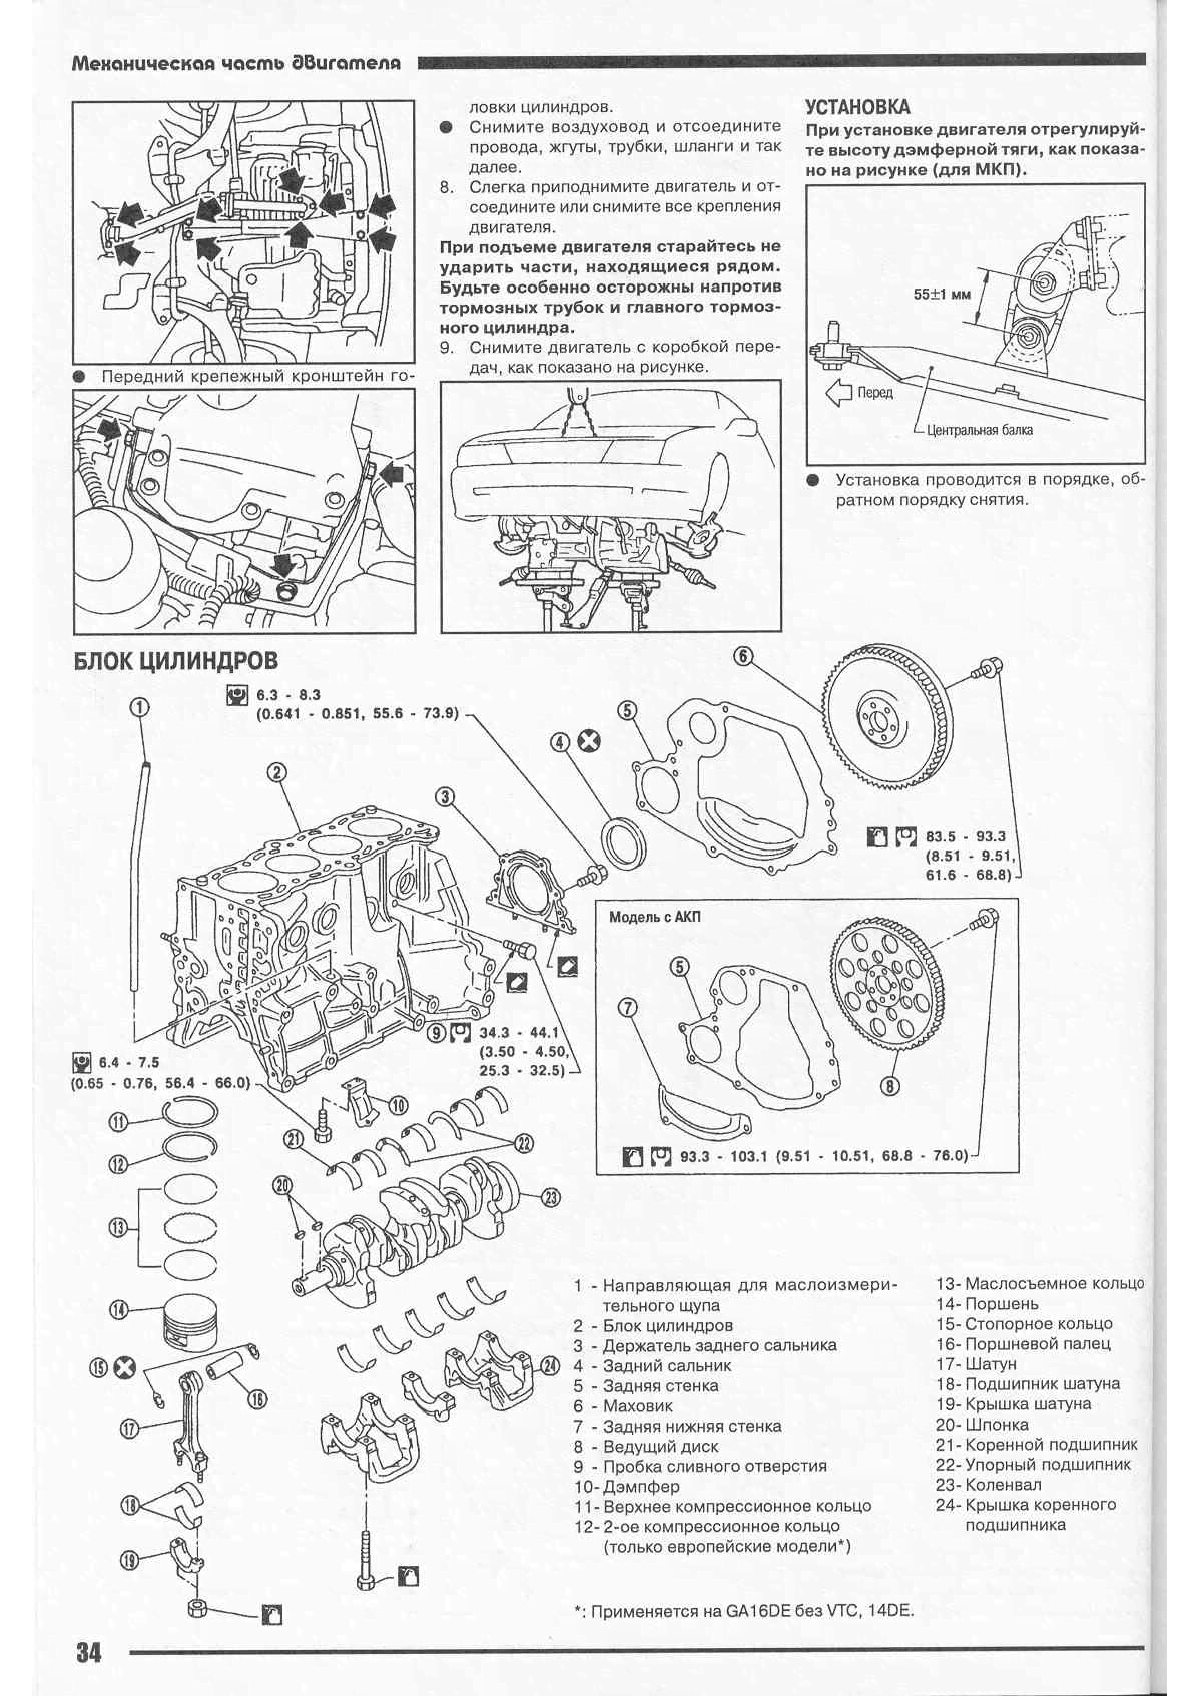 Двигатель ниссан альмера классик 1.6: характеристики, ресурс, регулировка клапанов